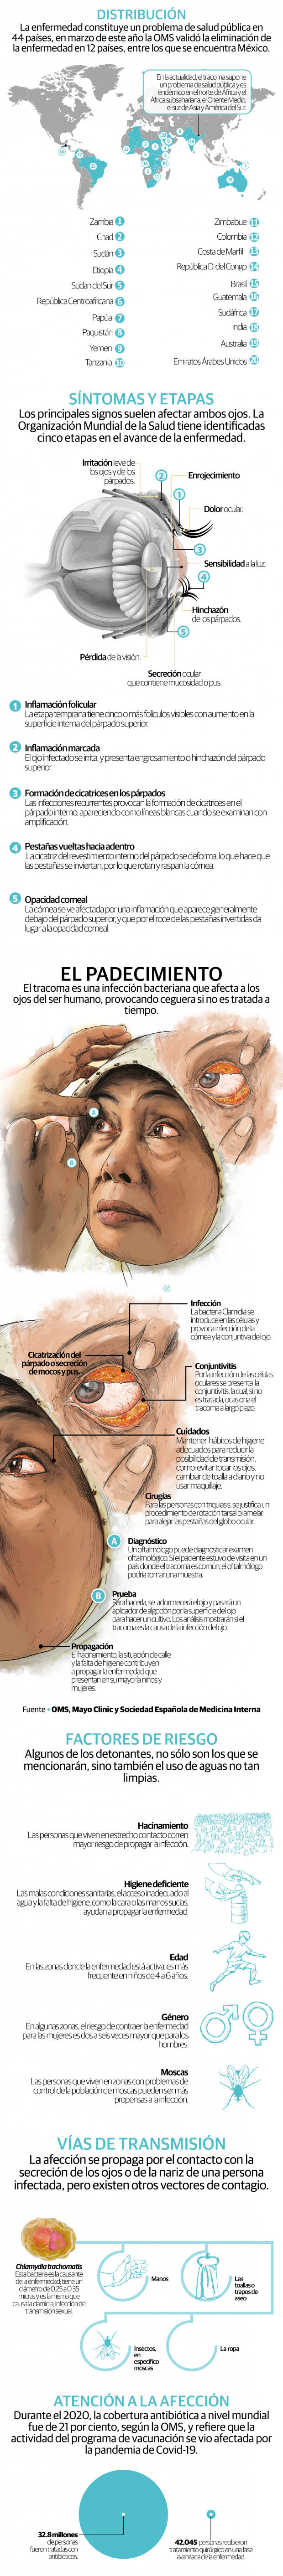 Tracoma, la enfermedad infecciosa que causa ceguera, aún es un problema en África y Asia